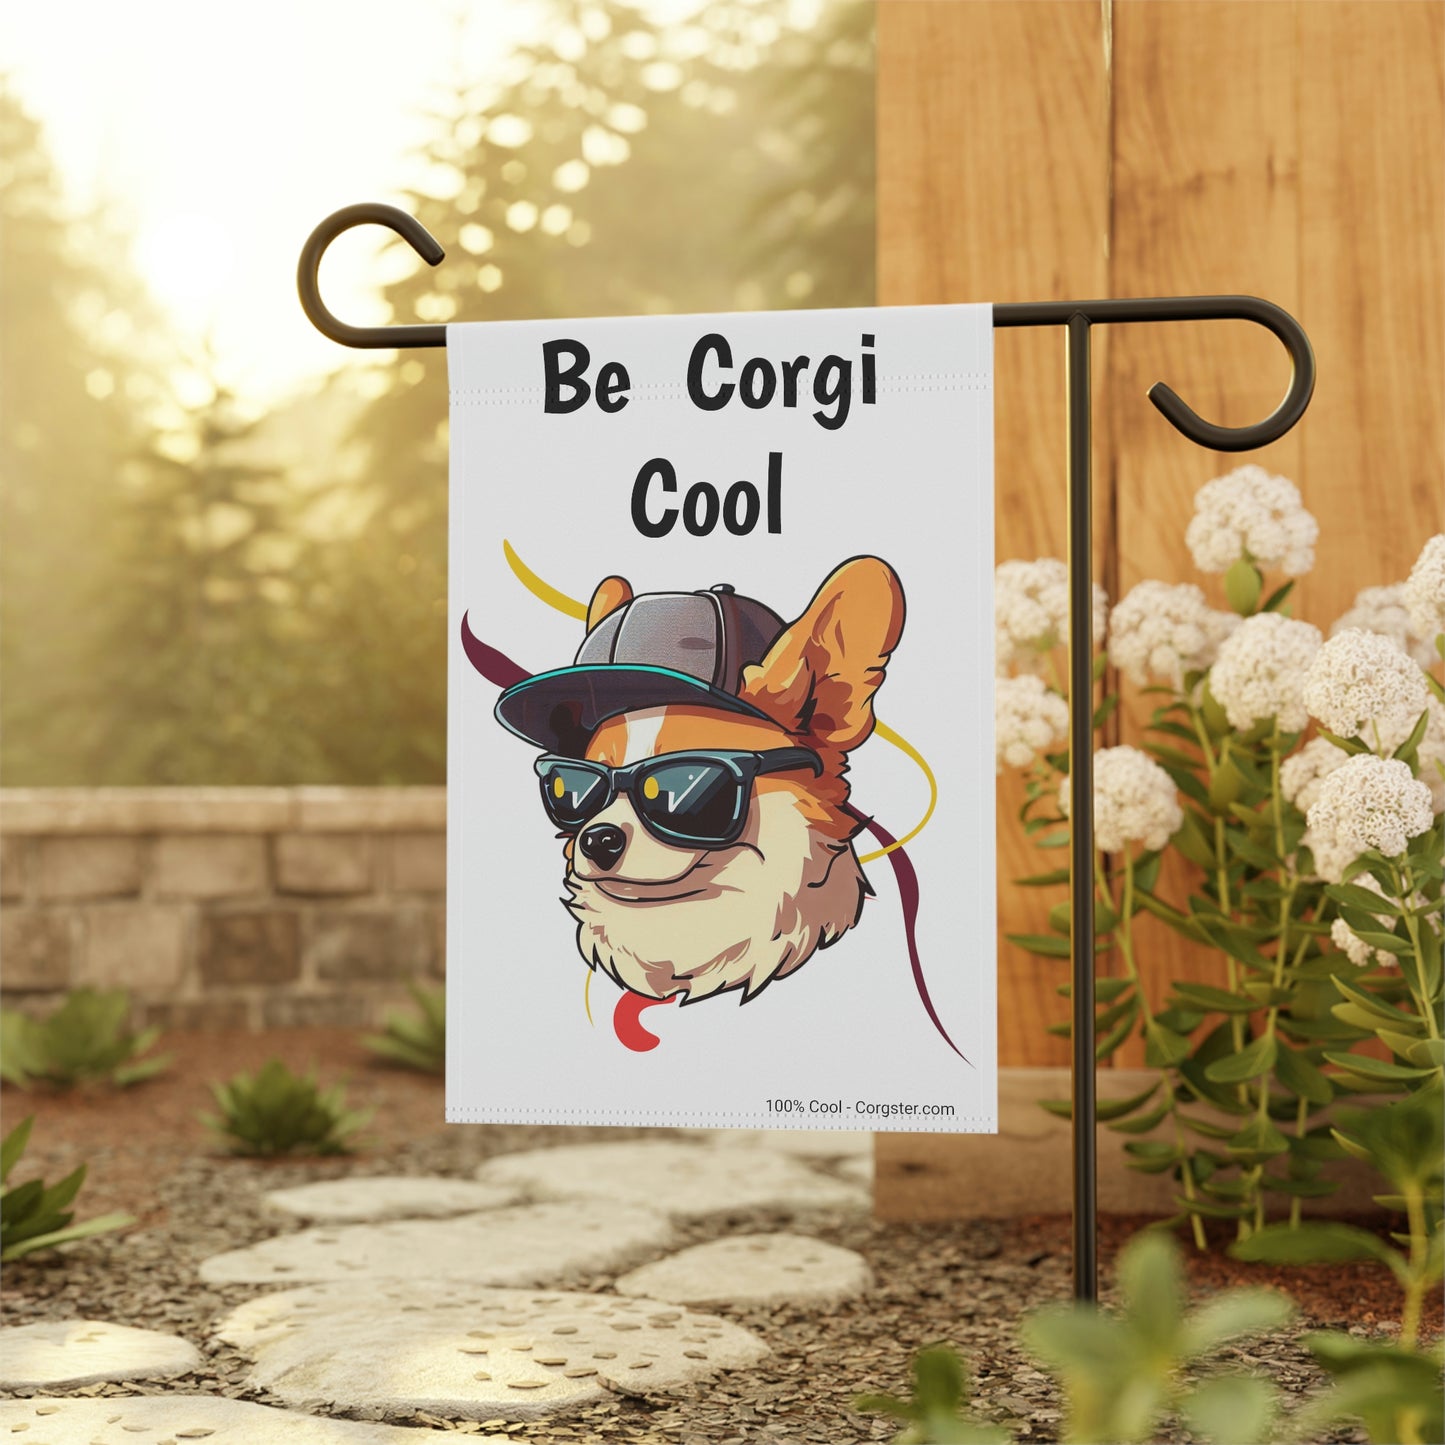 Be Corgi Cool - Corgster Garden & House Banner